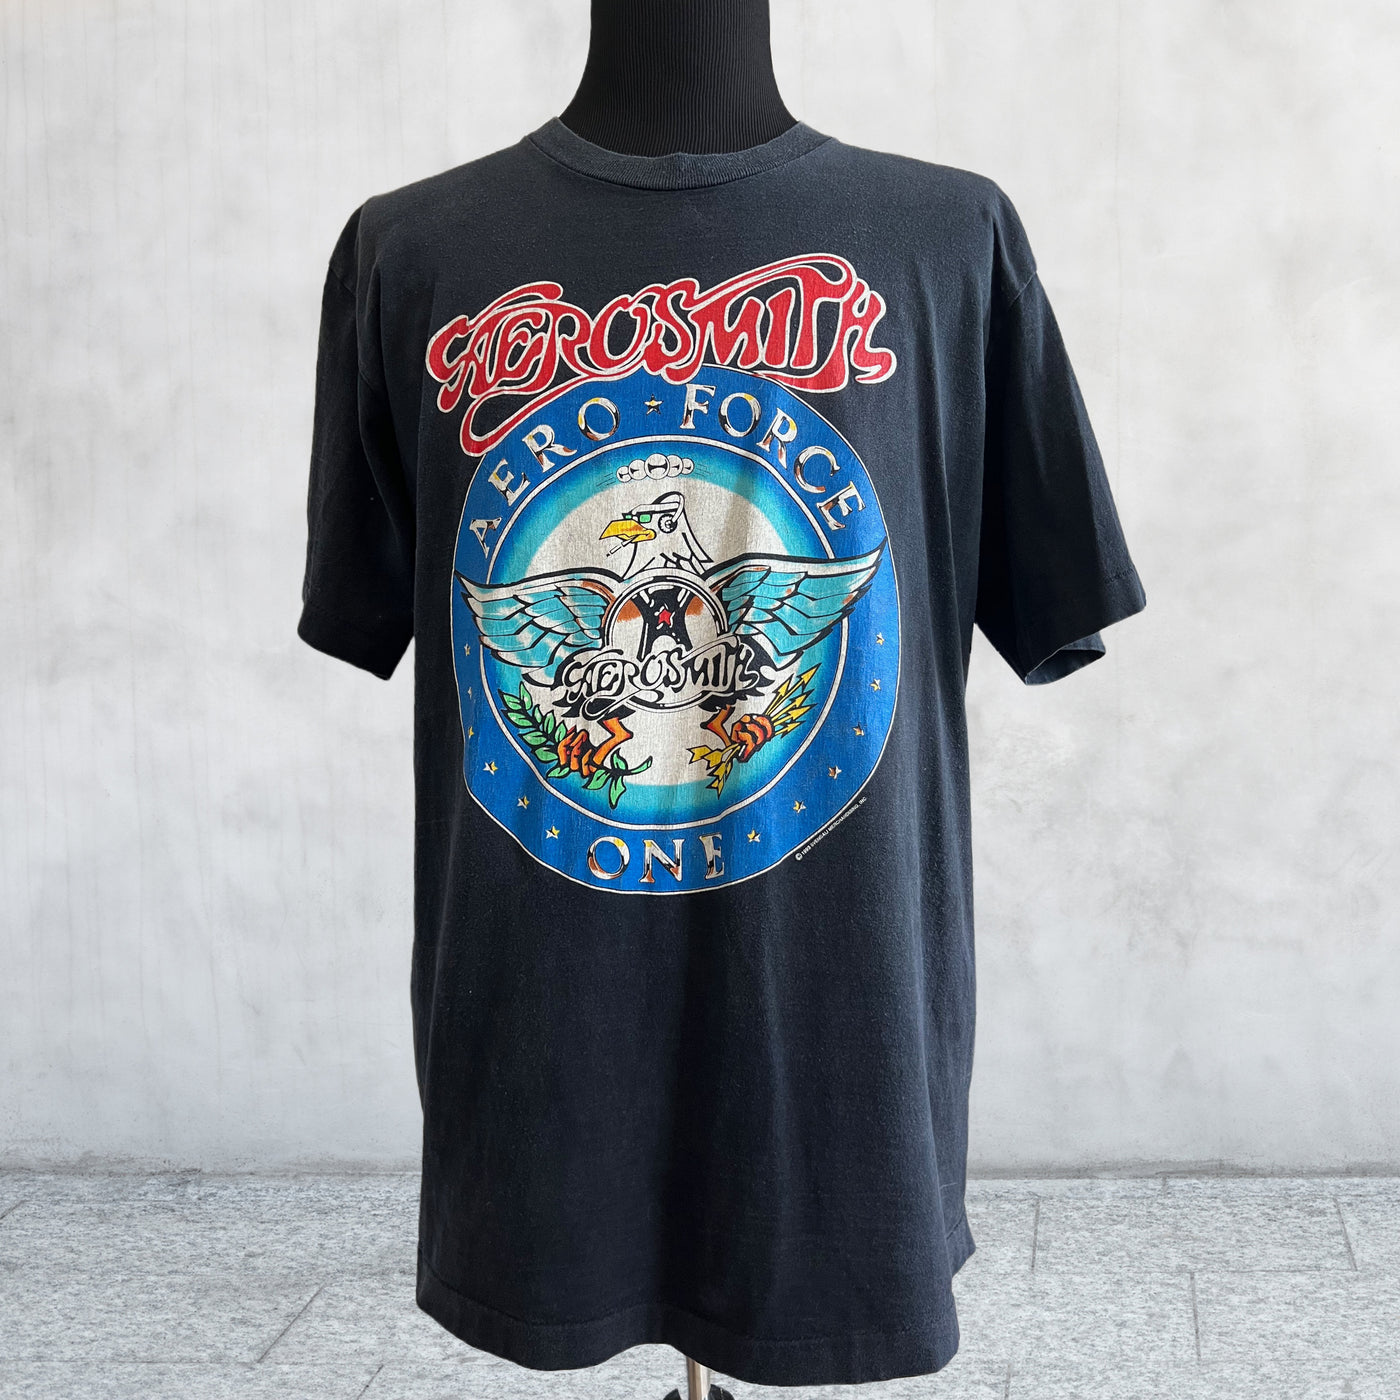 Vintage 1993 Aerosmith Tour T-shirt. XL front view